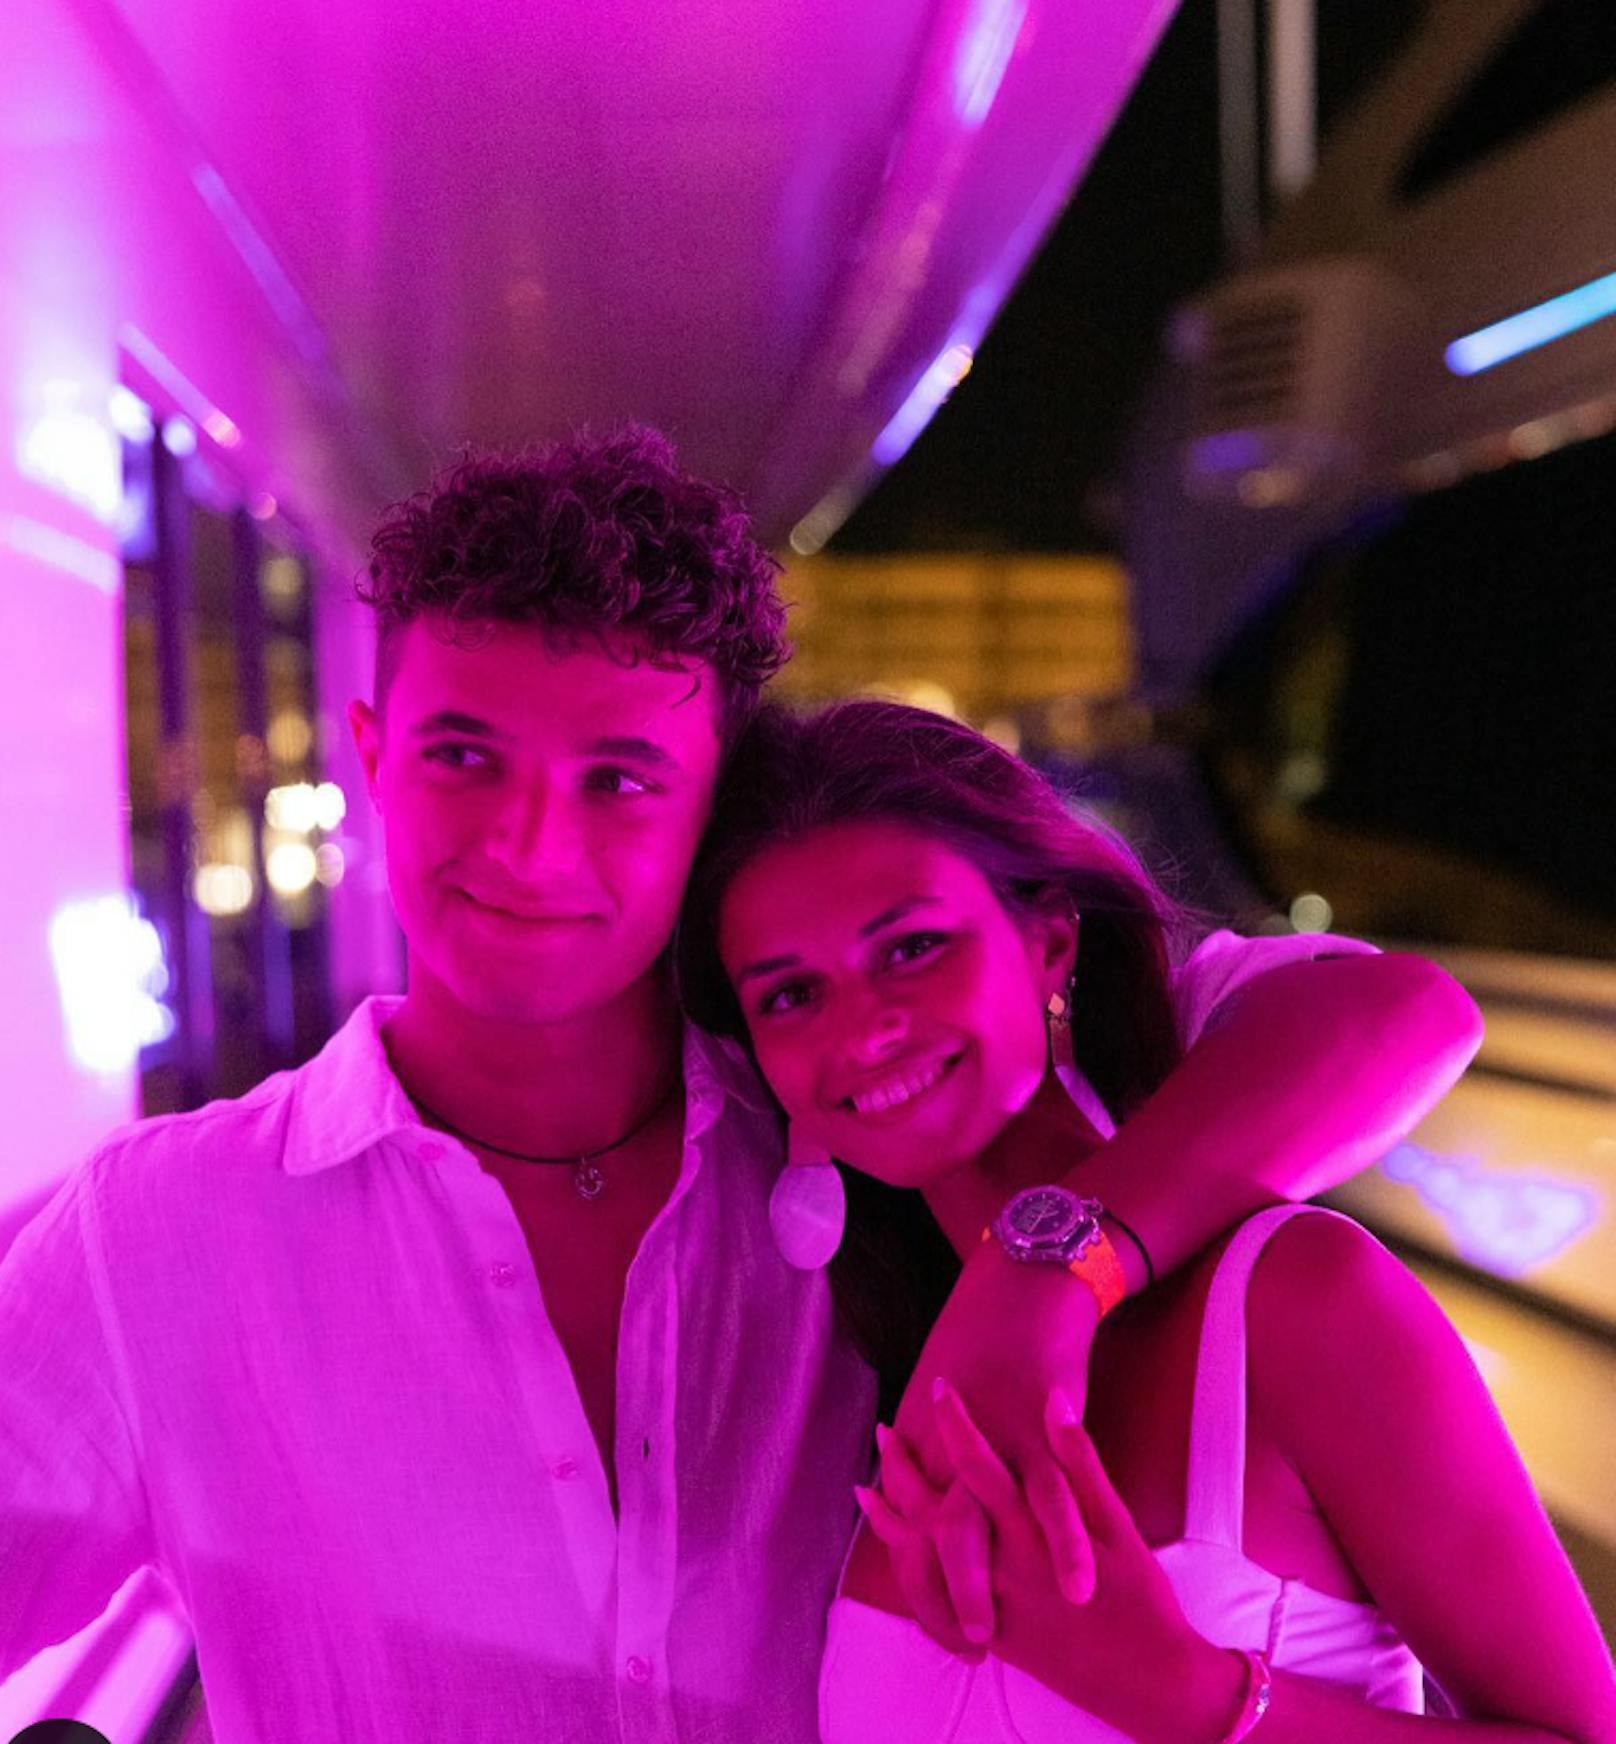 Lando Norris (McLaren): Lando feierte sein „einjähriges Jubliäum“ mit Model-Freundin Luisinha Oliveira bei Party-Action auf Ibiza, danach ging’s für ihn und die Portugiesin mit dem Boot auf hohe See.